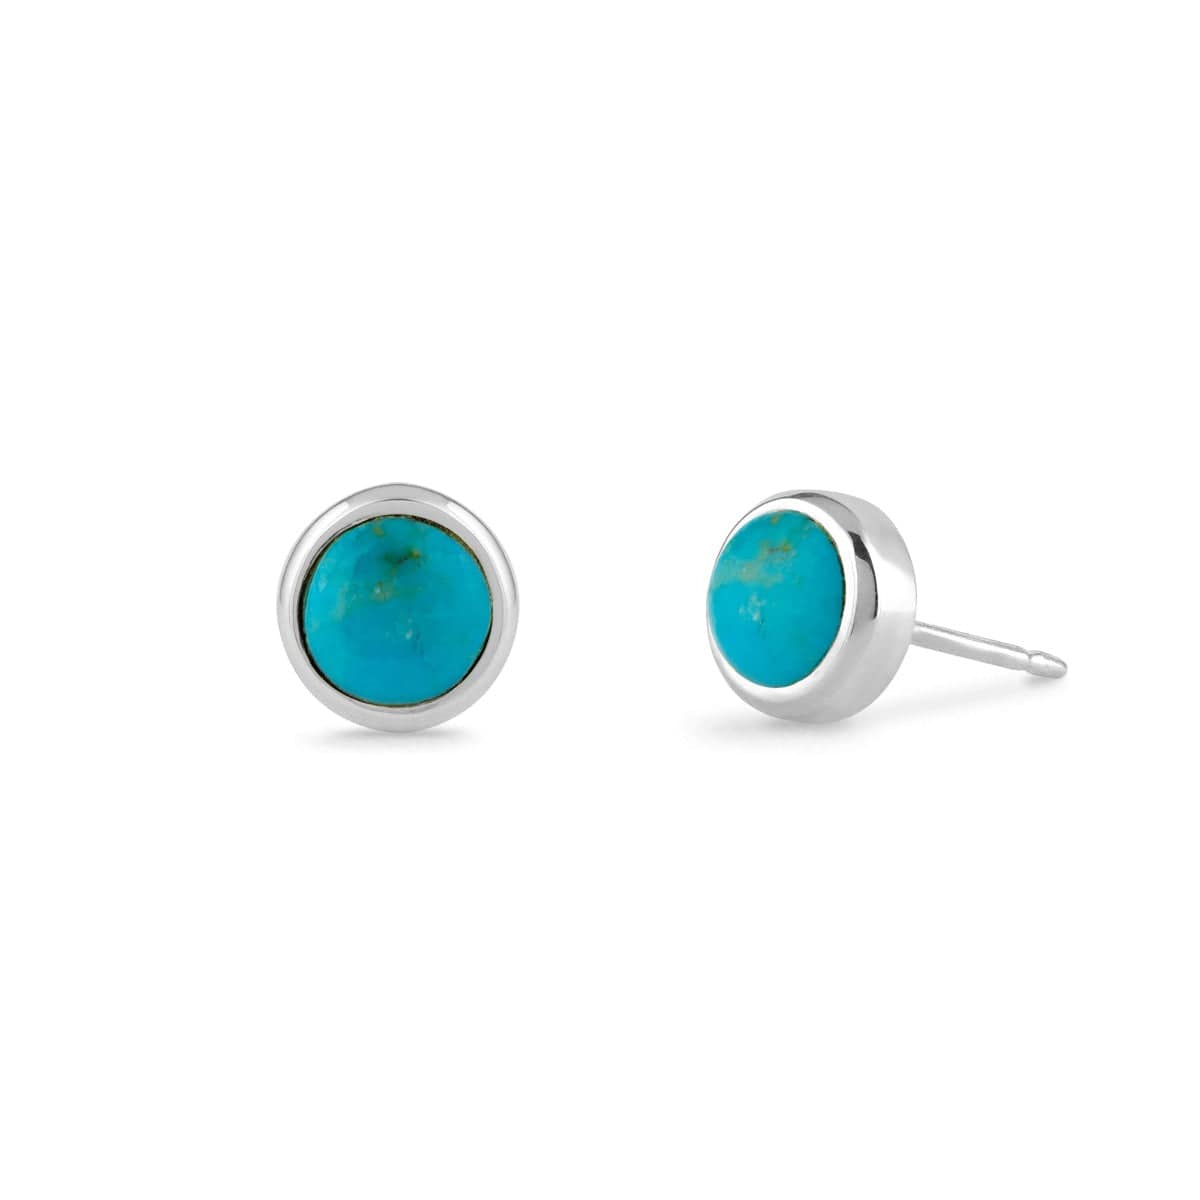 Boma Jewelry Earrings Sterling Silver / Turquoise Treasured Bezel Stud Earrings